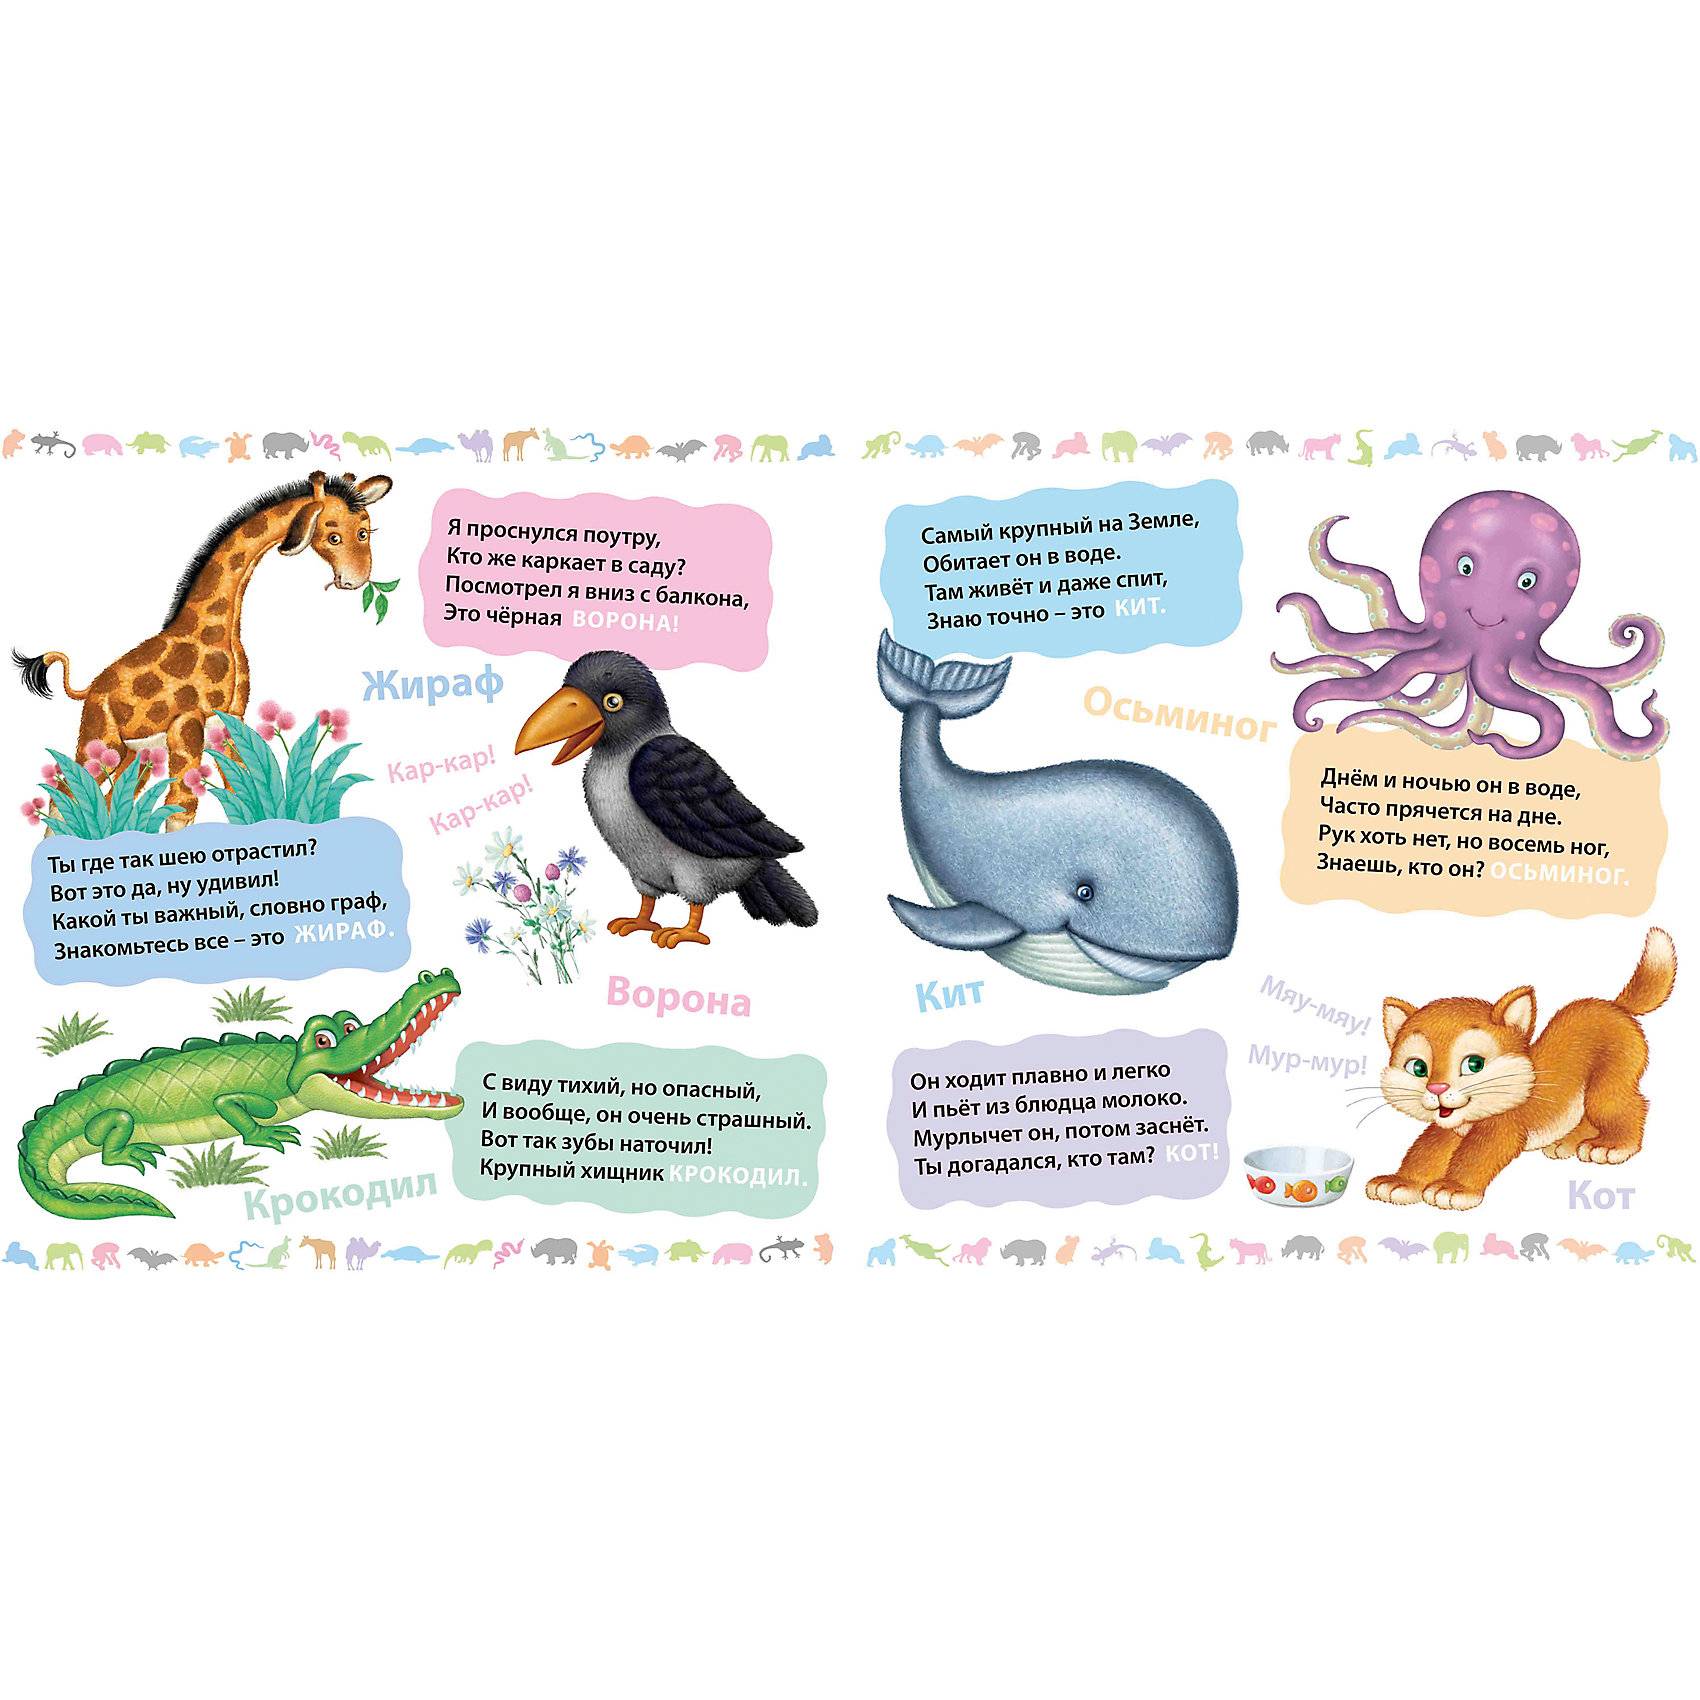 Короткие загадки для детей про животных. лёгкие загадки про животных для детей